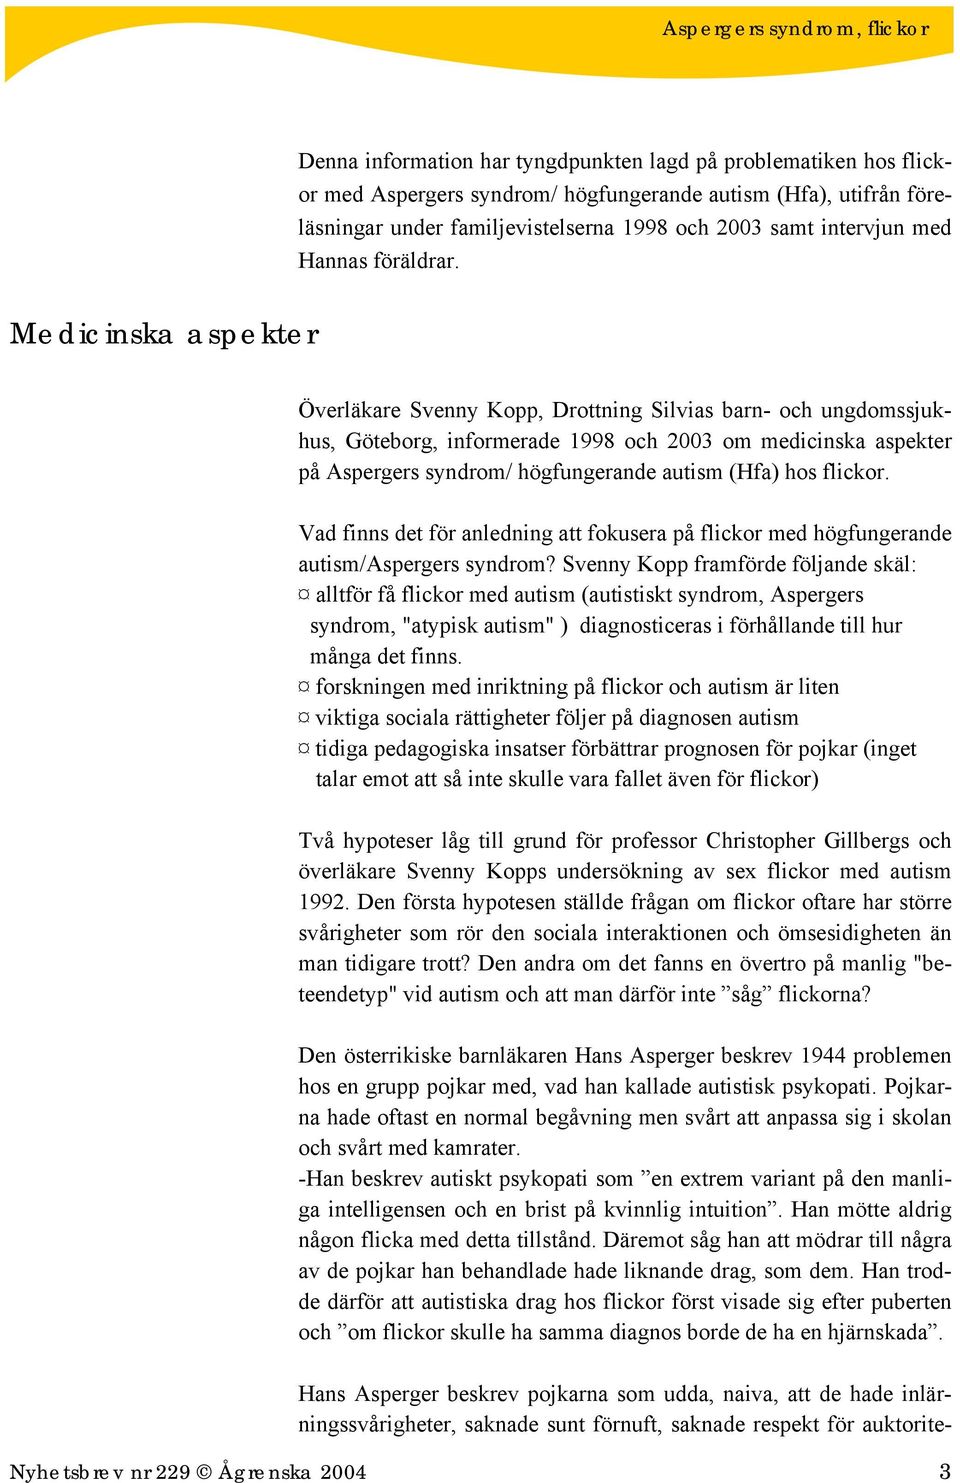 Medicinska aspekter Överläkare Svenny Kopp, Drottning Silvias barn- och ungdomssjukhus, Göteborg, informerade 1998 och 2003 om medicinska aspekter på Aspergers syndrom/ högfungerande autism (Hfa) hos